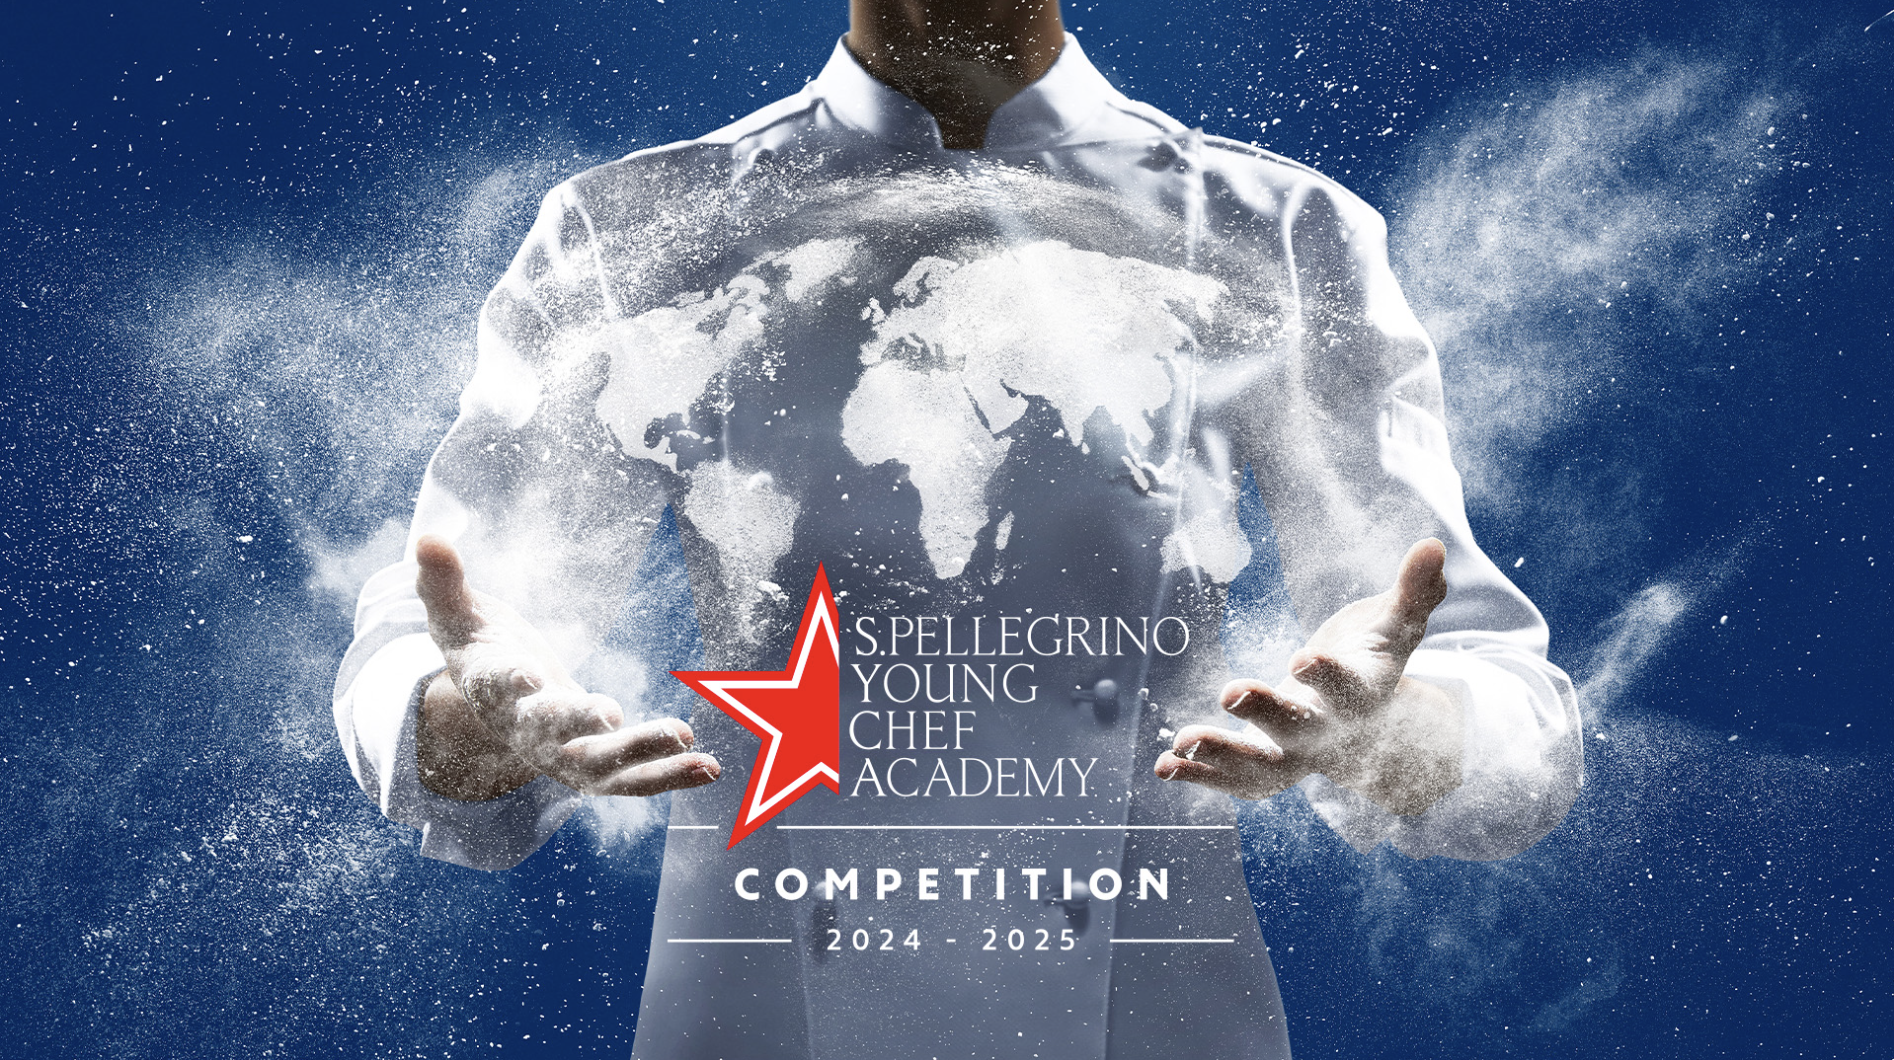 S.Pellegrino Young Chef Academy Competition 2024-25: 5 de los chefs más reconocidos de la industria gastronómica serán jurados de la final regional